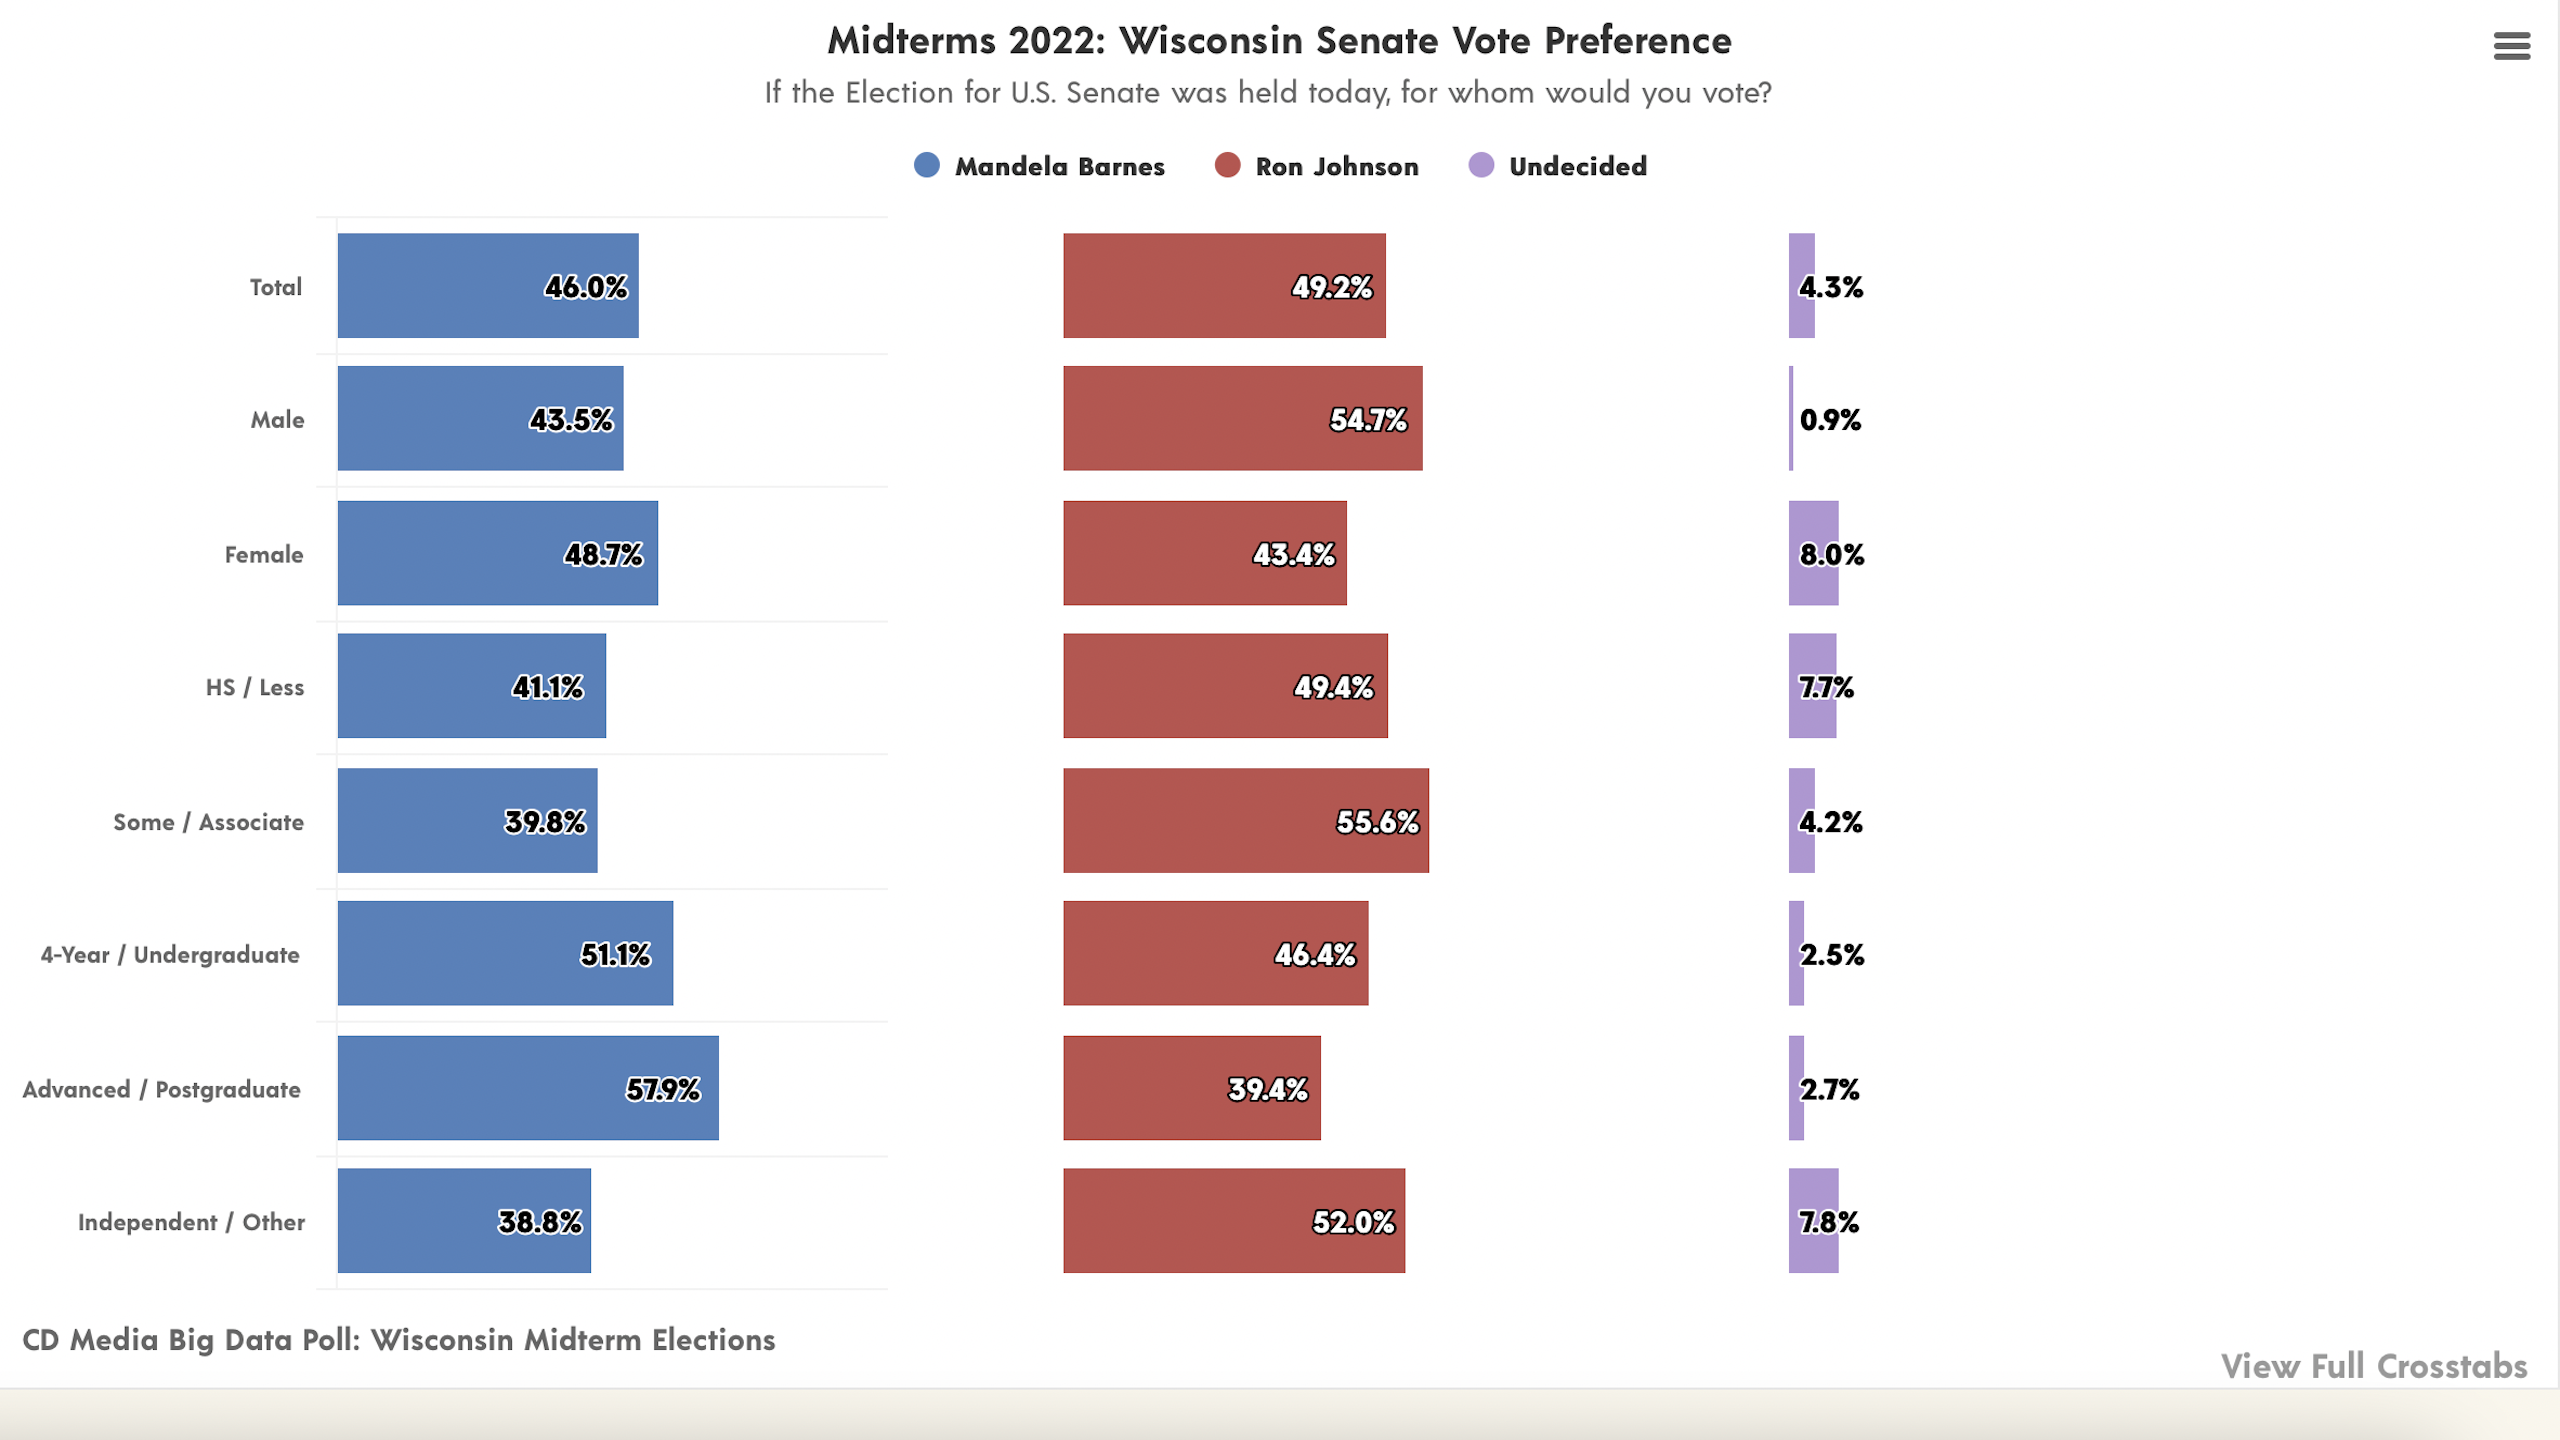 CD Media Big Data Poll Wisconsin Senate Vote Preference